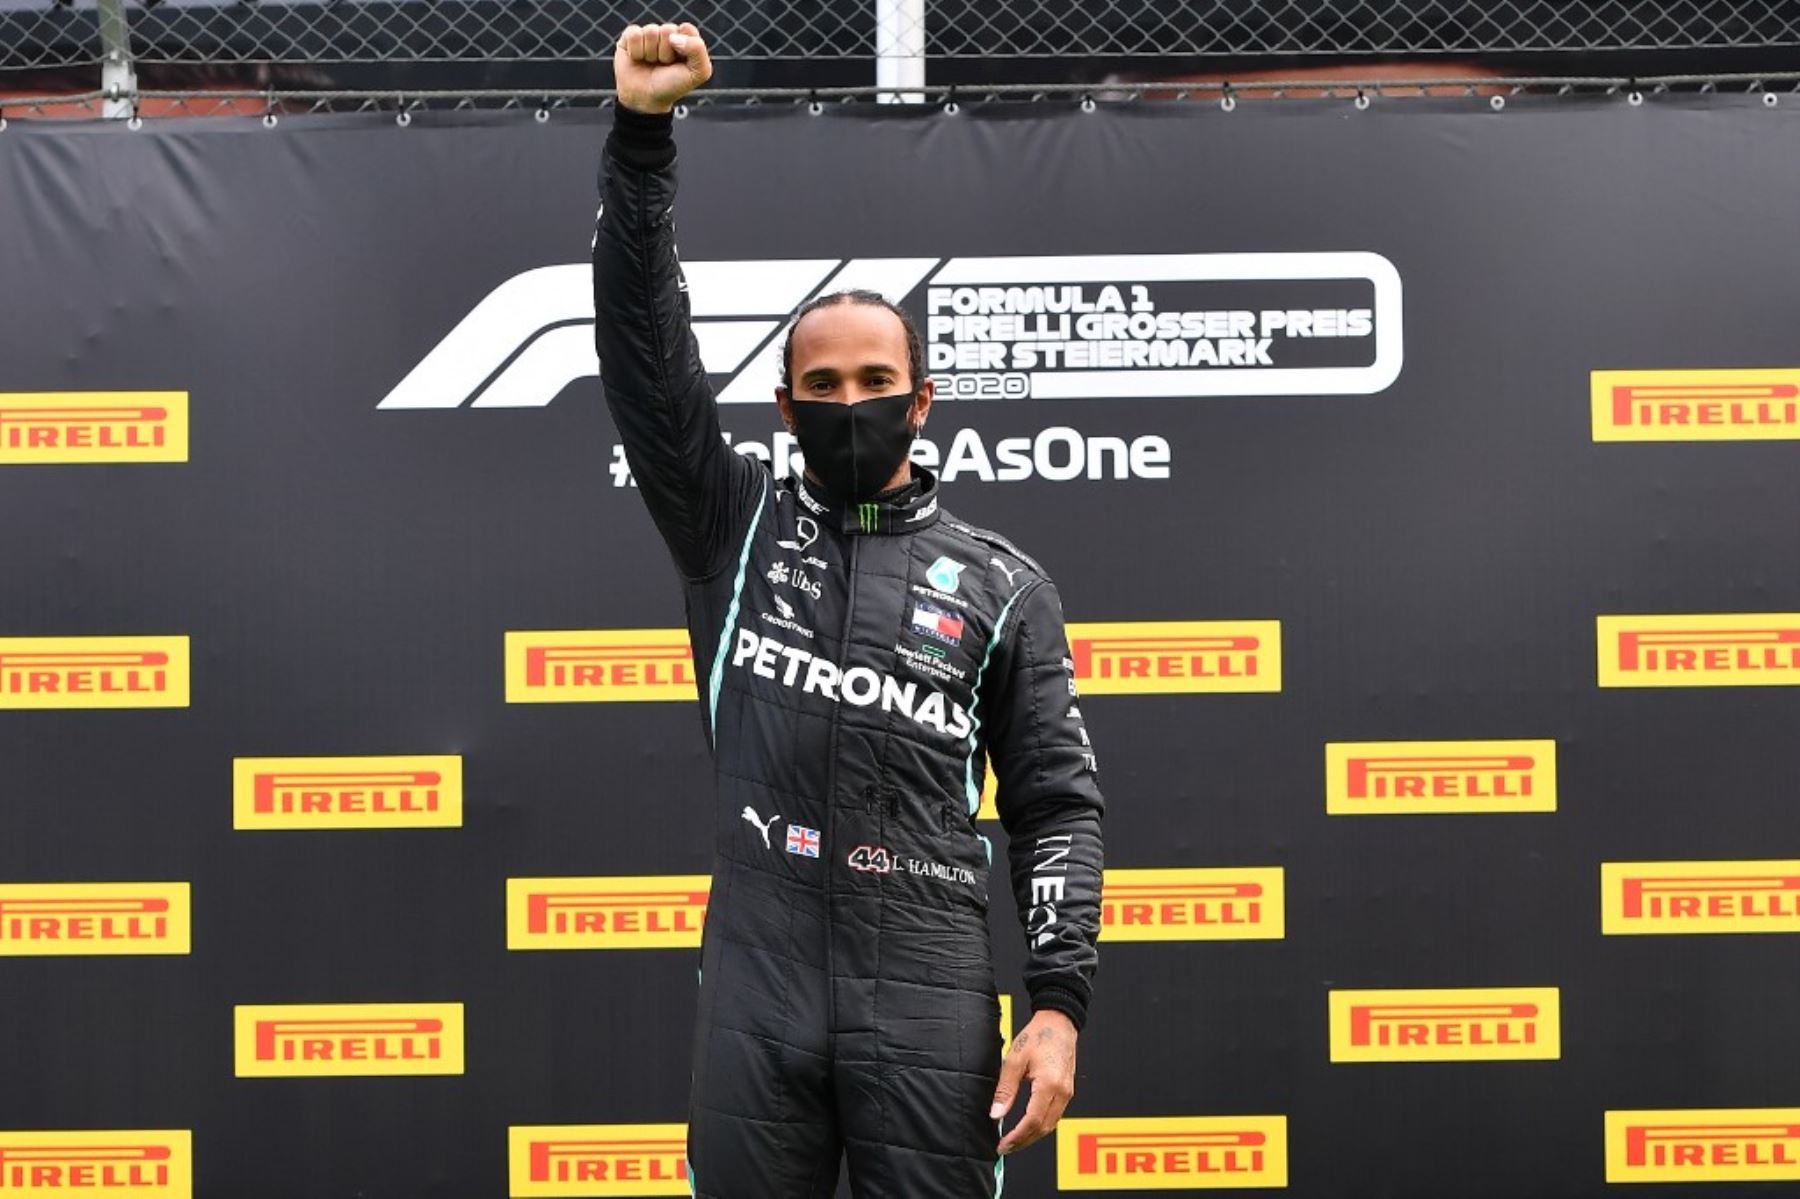 Tras su error en la primera carrera de la temporada, el británico Lewis Hamilton (Mercedes) logró la victoria este domingo en el Gran Premio de Estiria